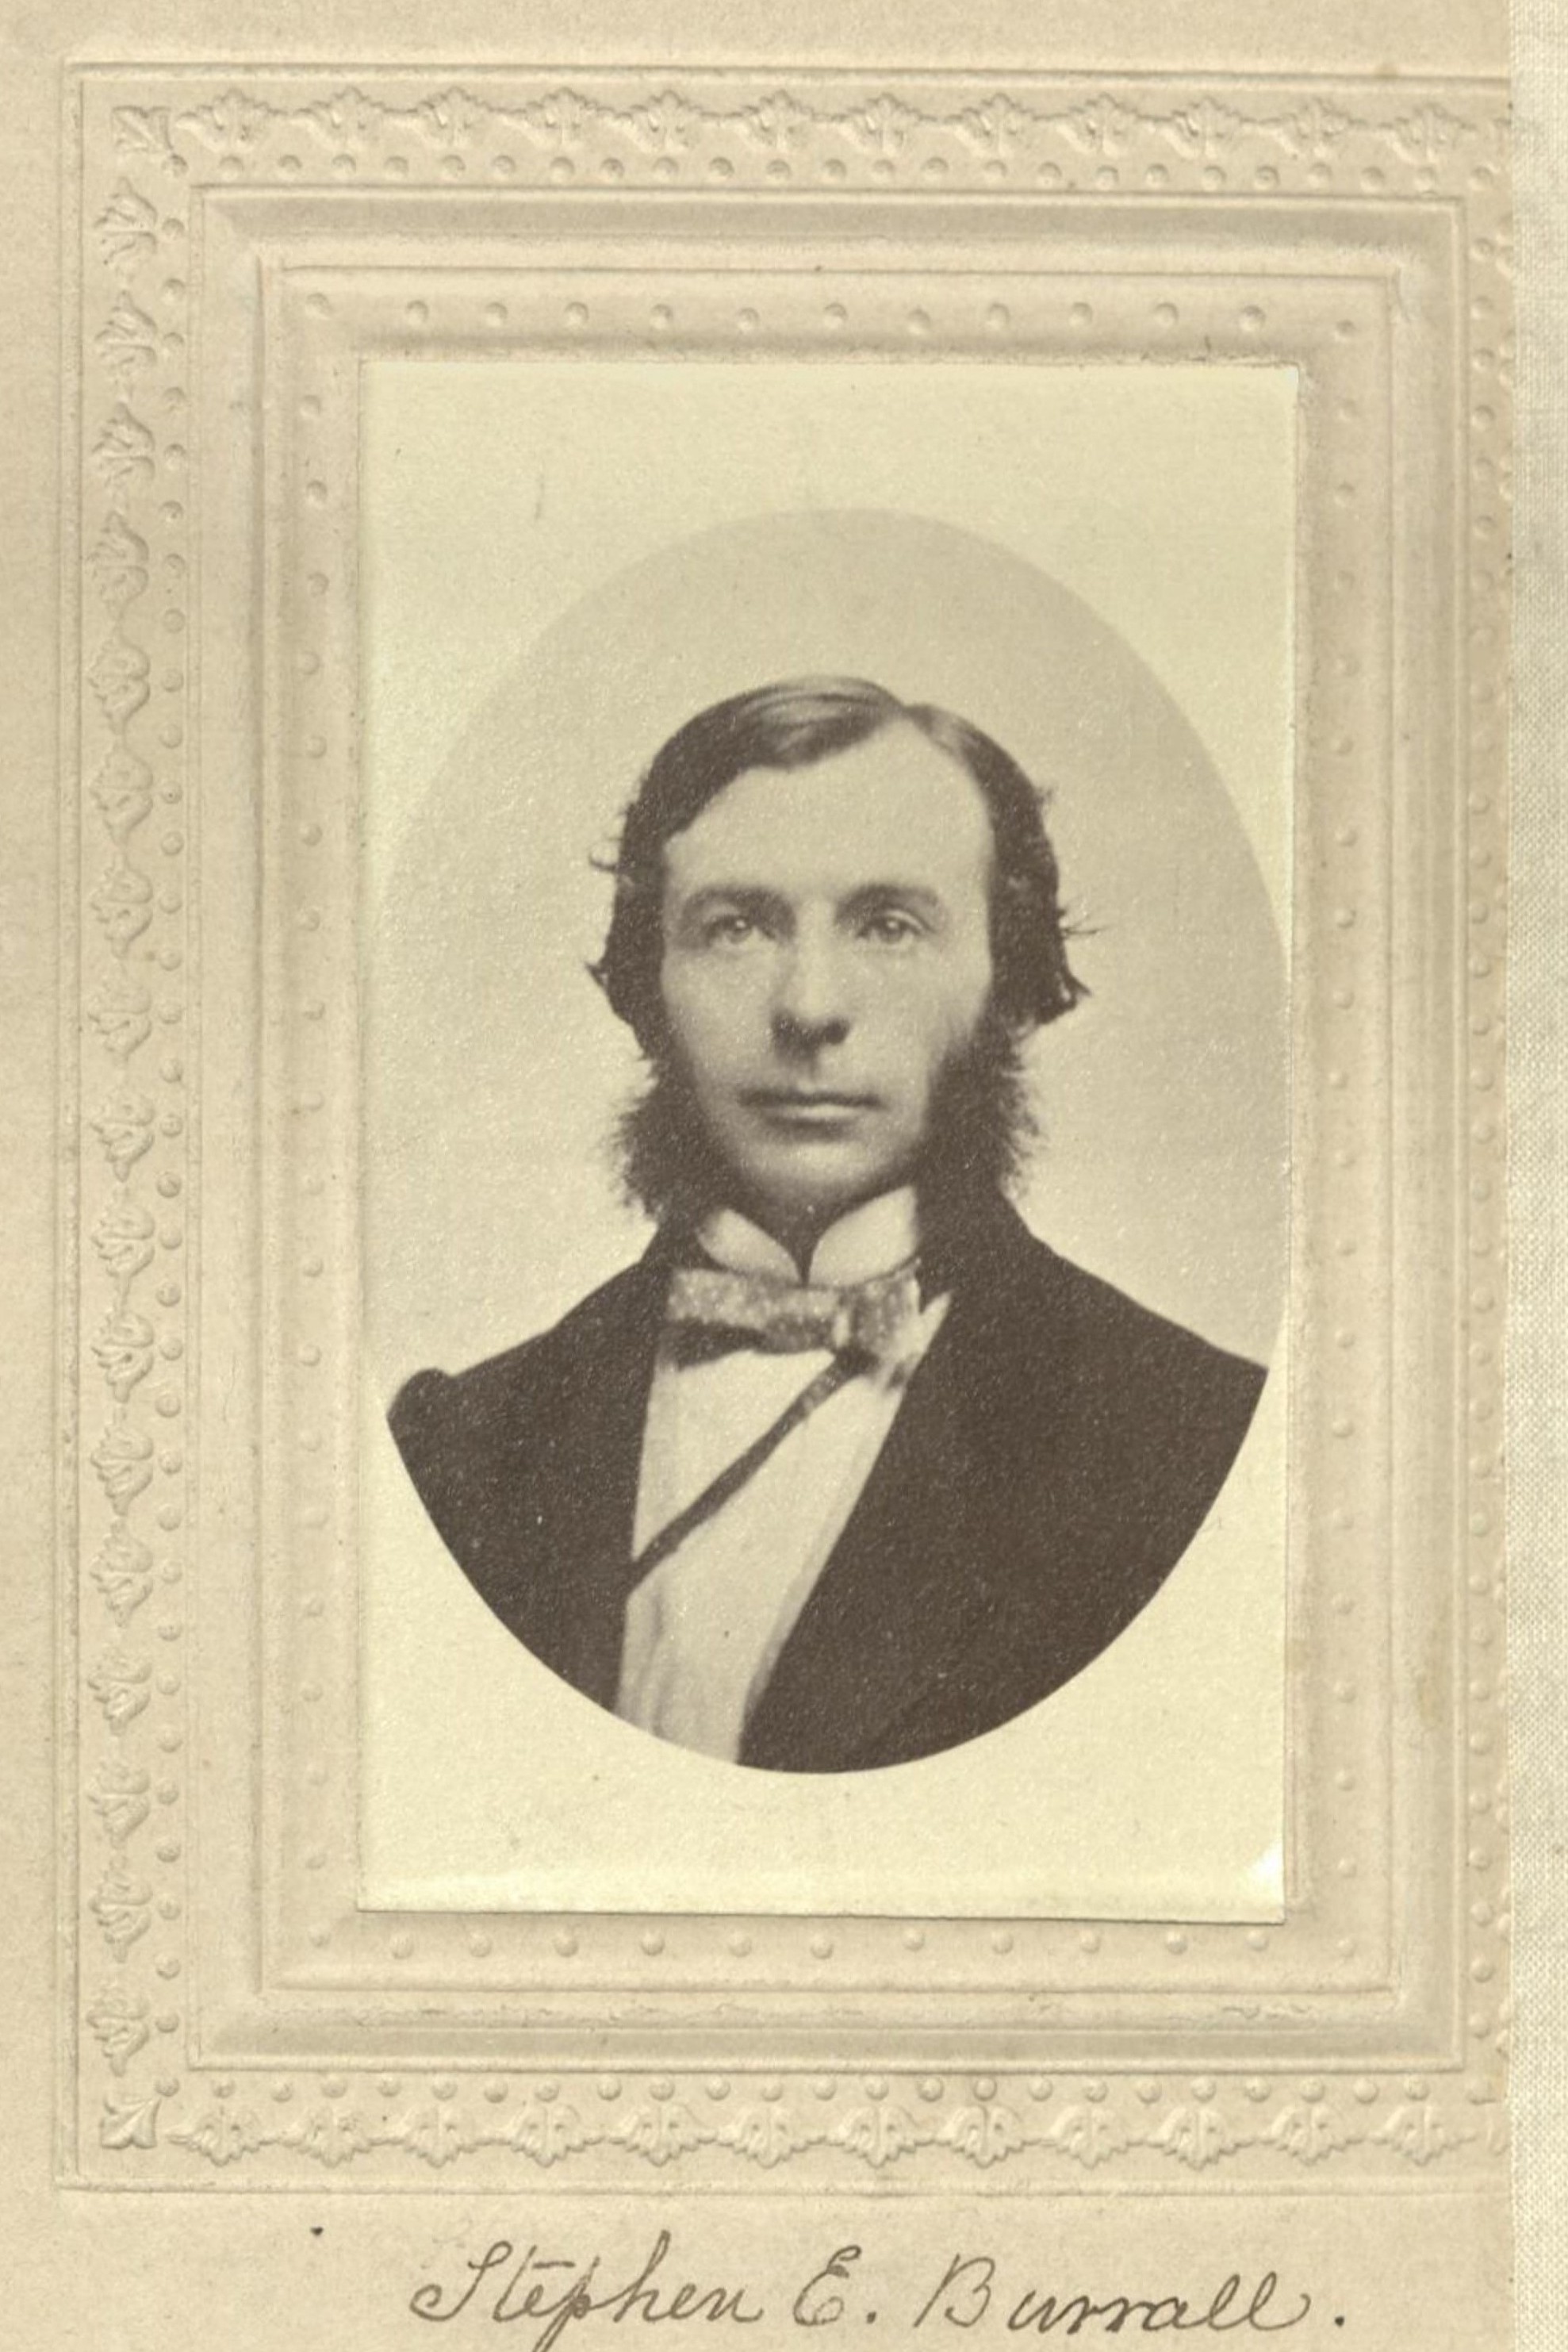 Member portrait of Stephen E. Burrall